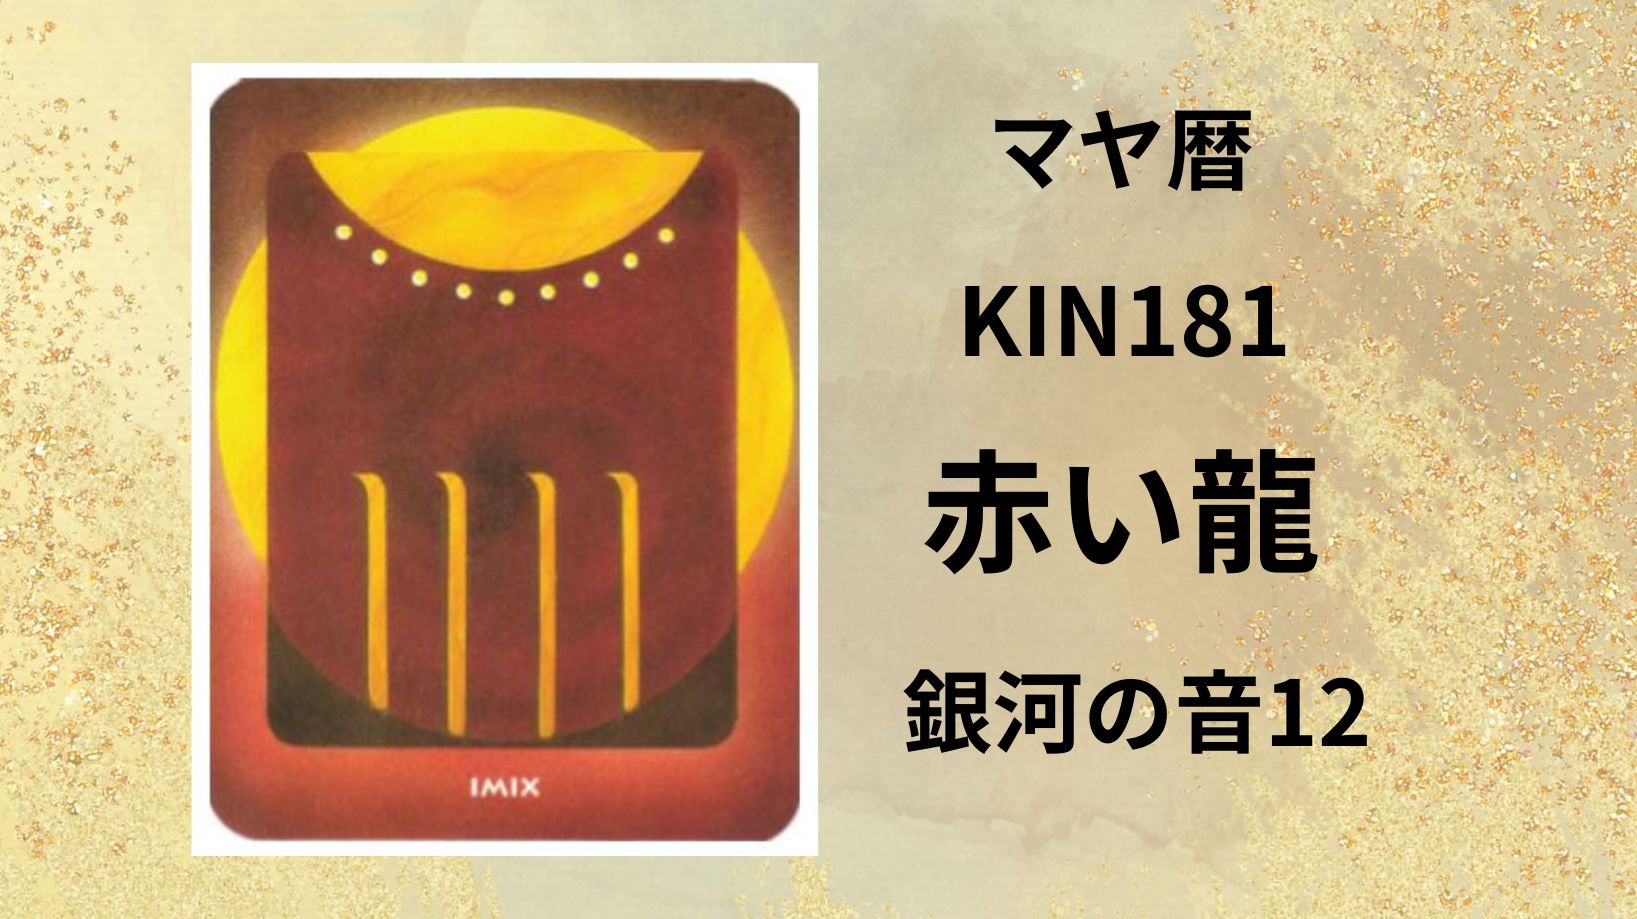 【マヤ暦-今日はどんな日】KIN181「赤い龍」のメッセージ